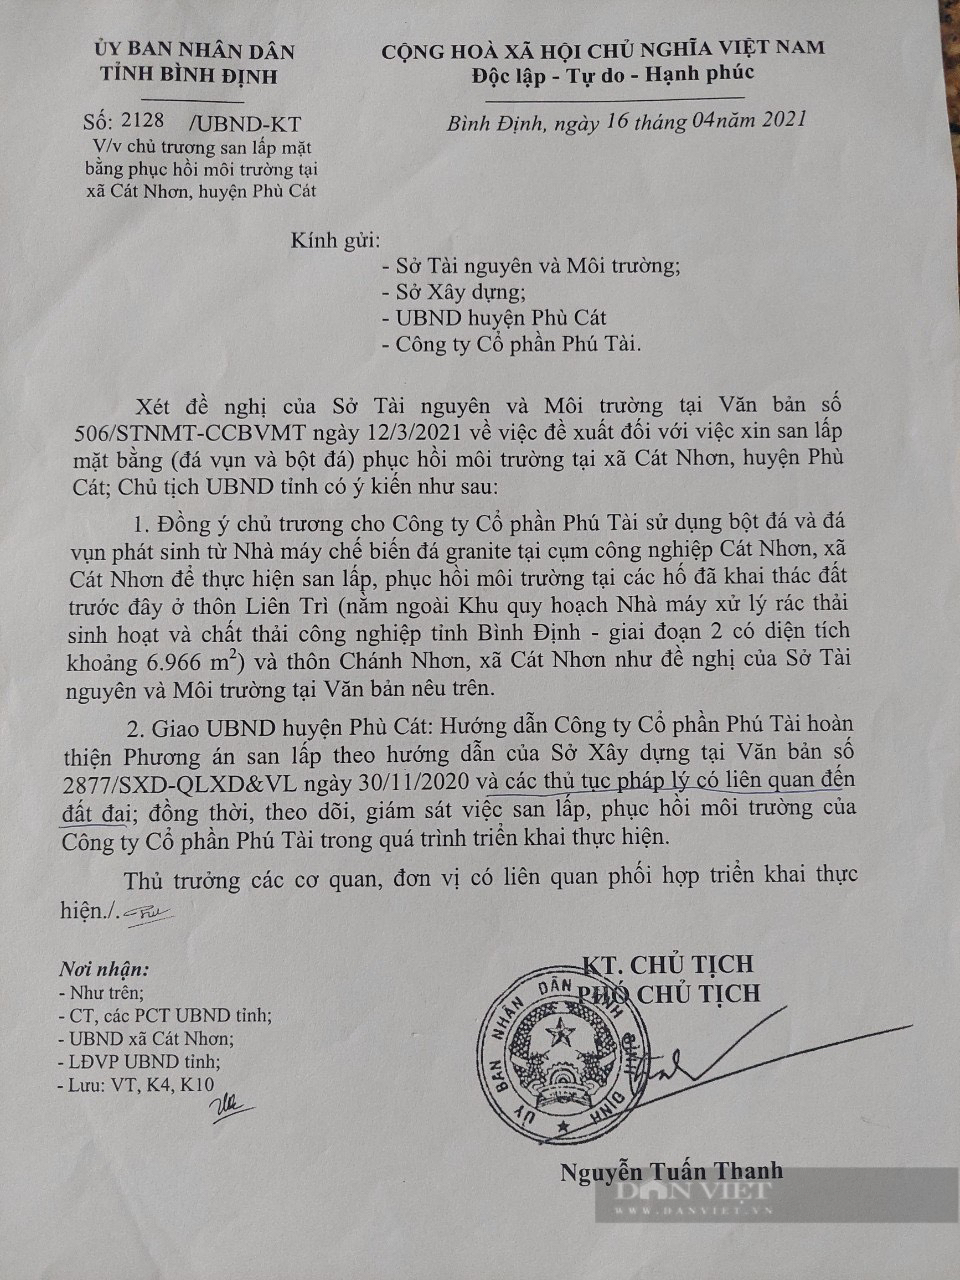 Chủ tịch Bình Định yêu cầu xử lý dứt điểm vụ san lấp bột đá “sai quy trình&quot; Báo Dân Việt phản ánh - Ảnh 4.